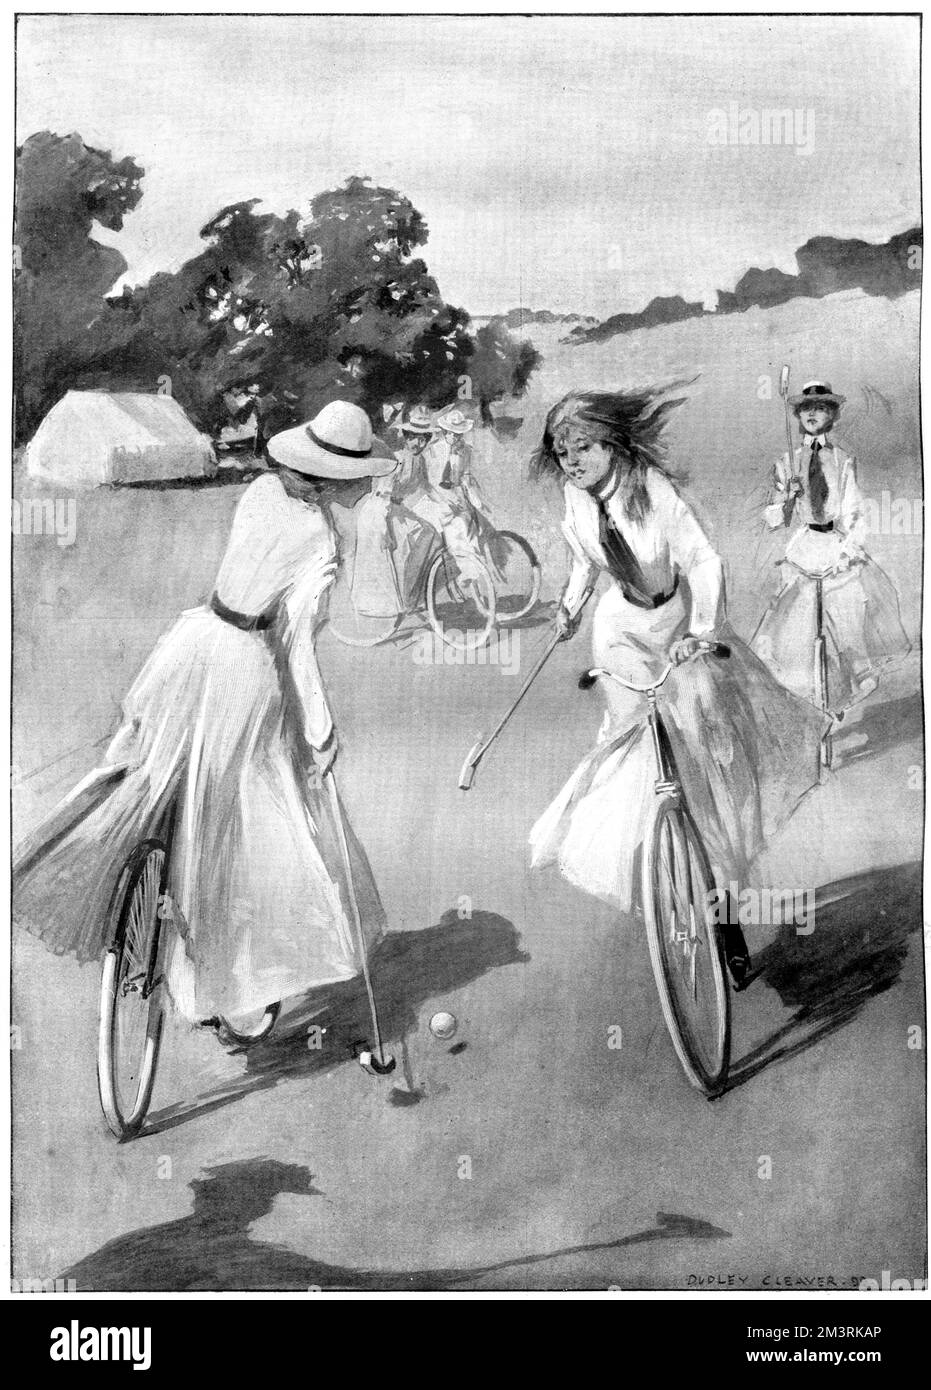 Les filles jouant au hockey sur vélo, une forme de polo sur roues, à l'époque le sport du vélo était au plus haut de la popularité. 1899 Banque D'Images